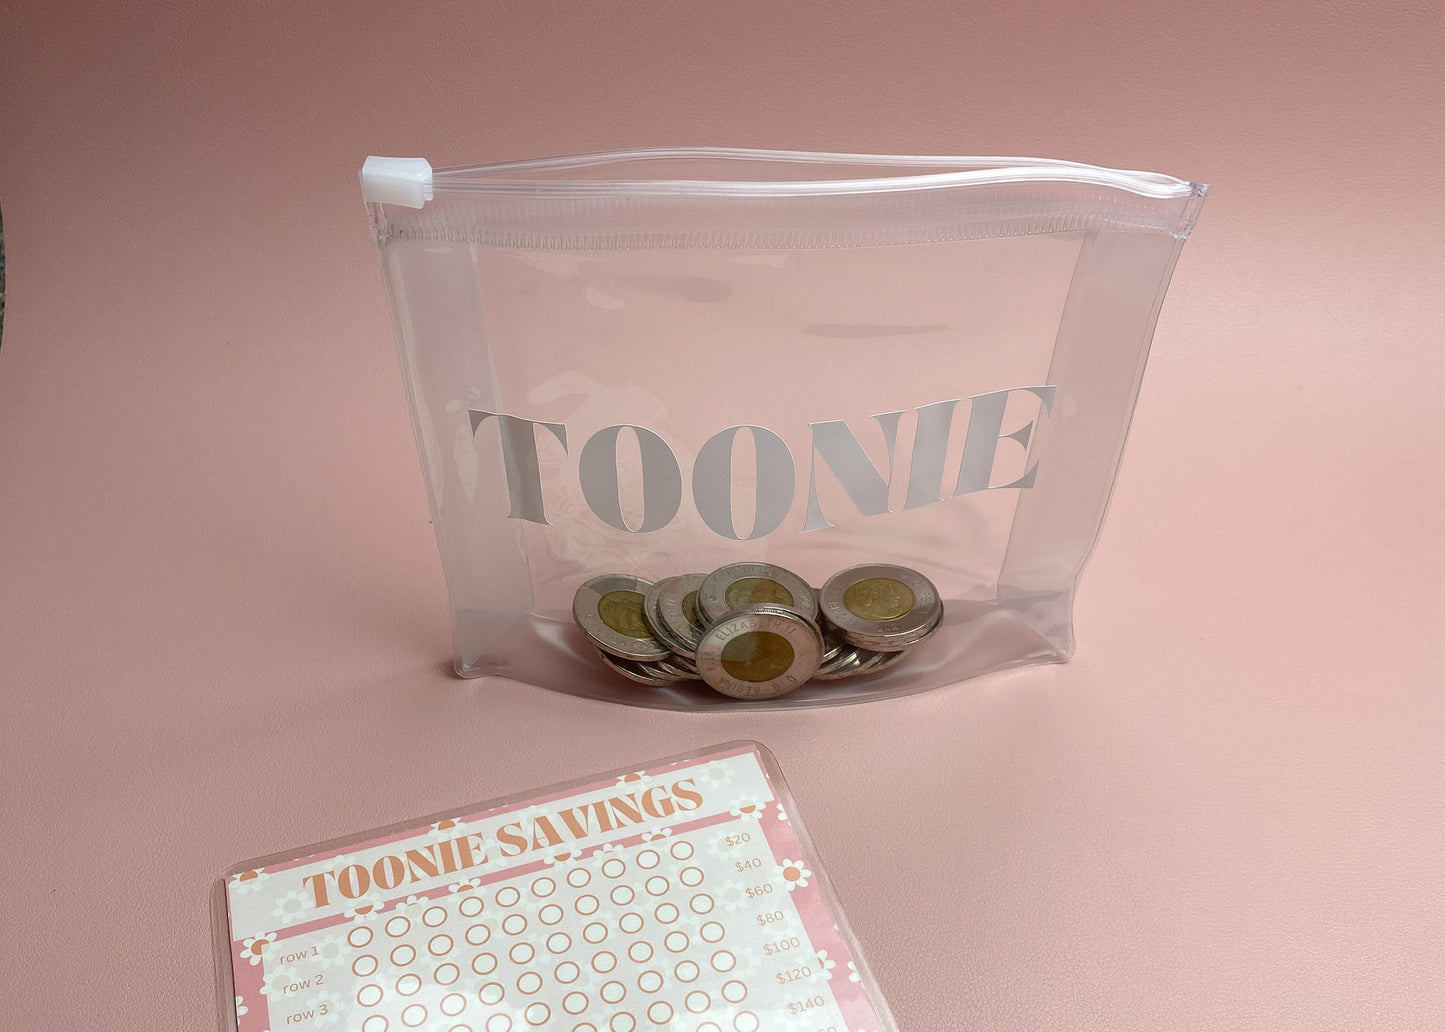 Toonie Savings Challenge